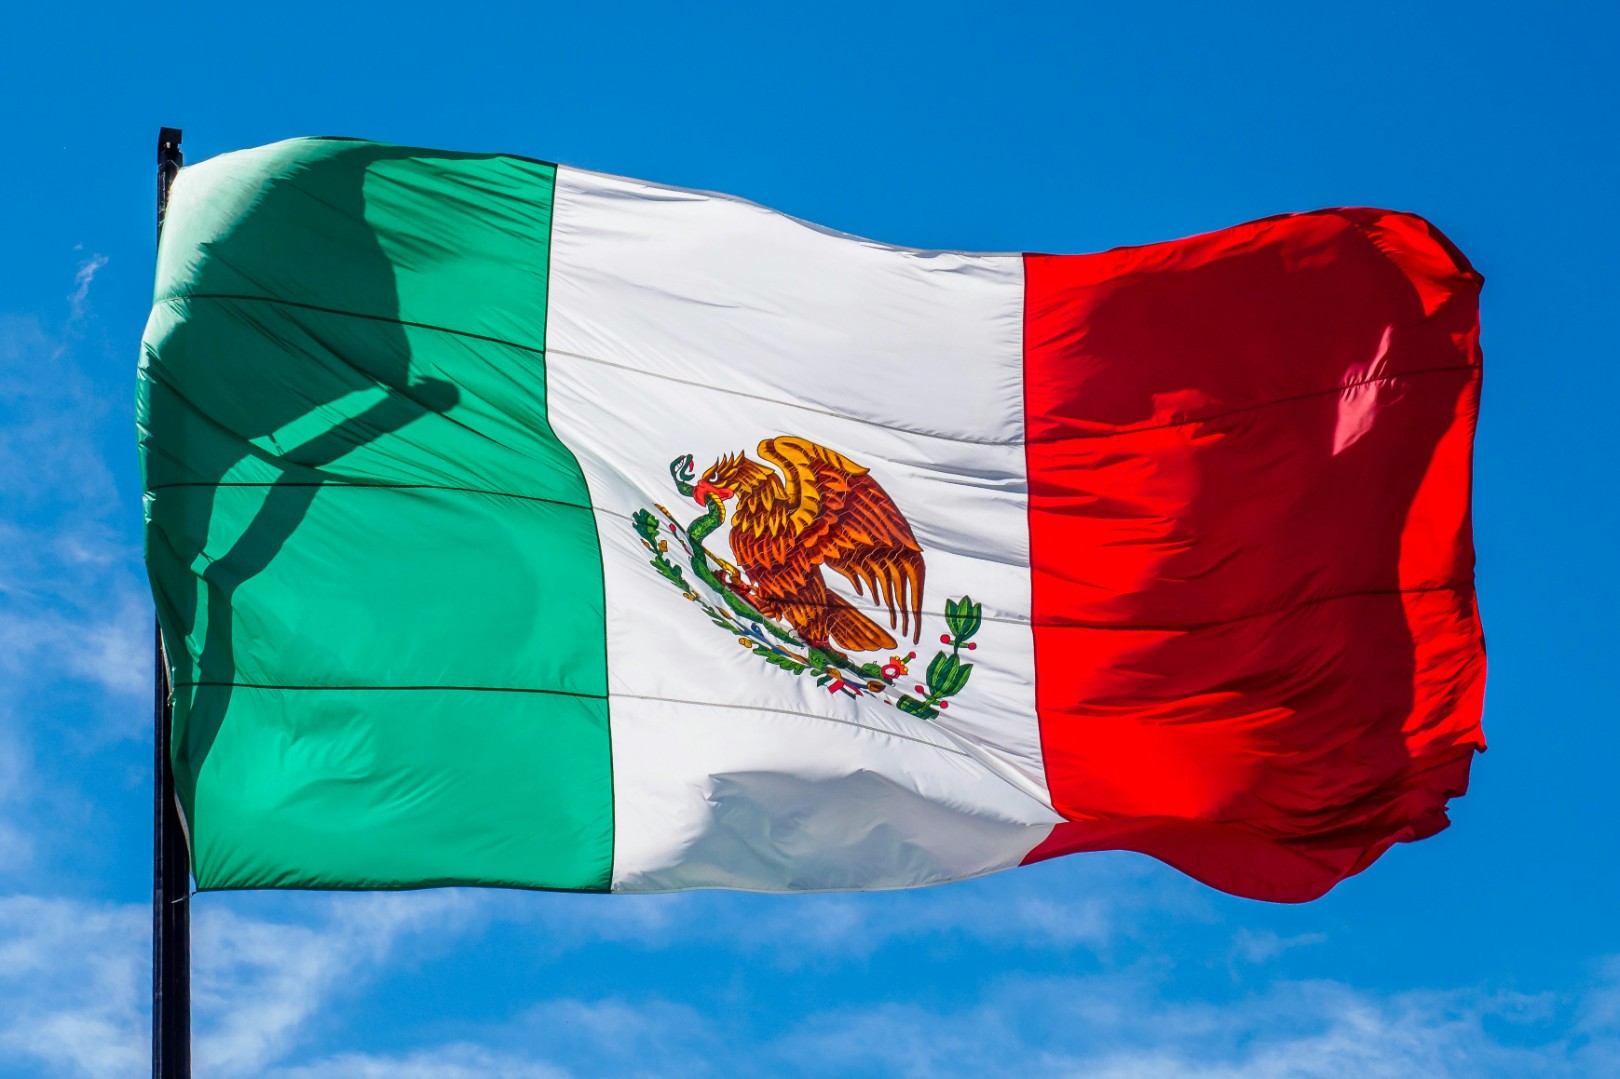 Производитель продуктов питания «Маревен Фуд Сэнтрал» представил продукцию в Мексике